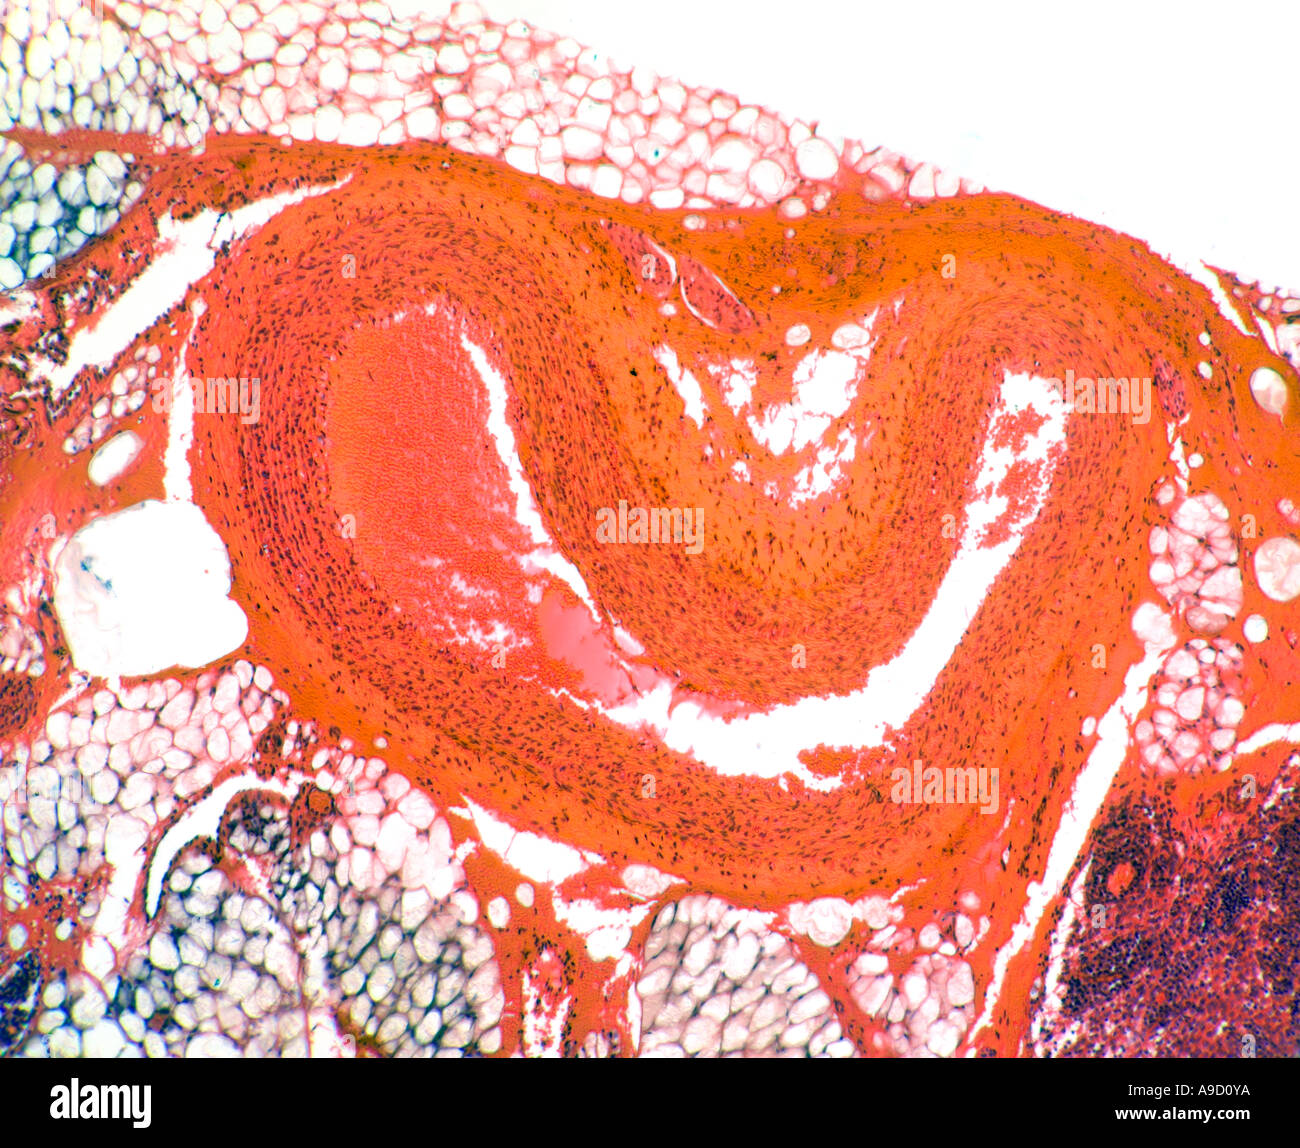 L'artère humaine article photomicrographie, ici montré s'est effondré (pas de sang à l'intérieur) Banque D'Images